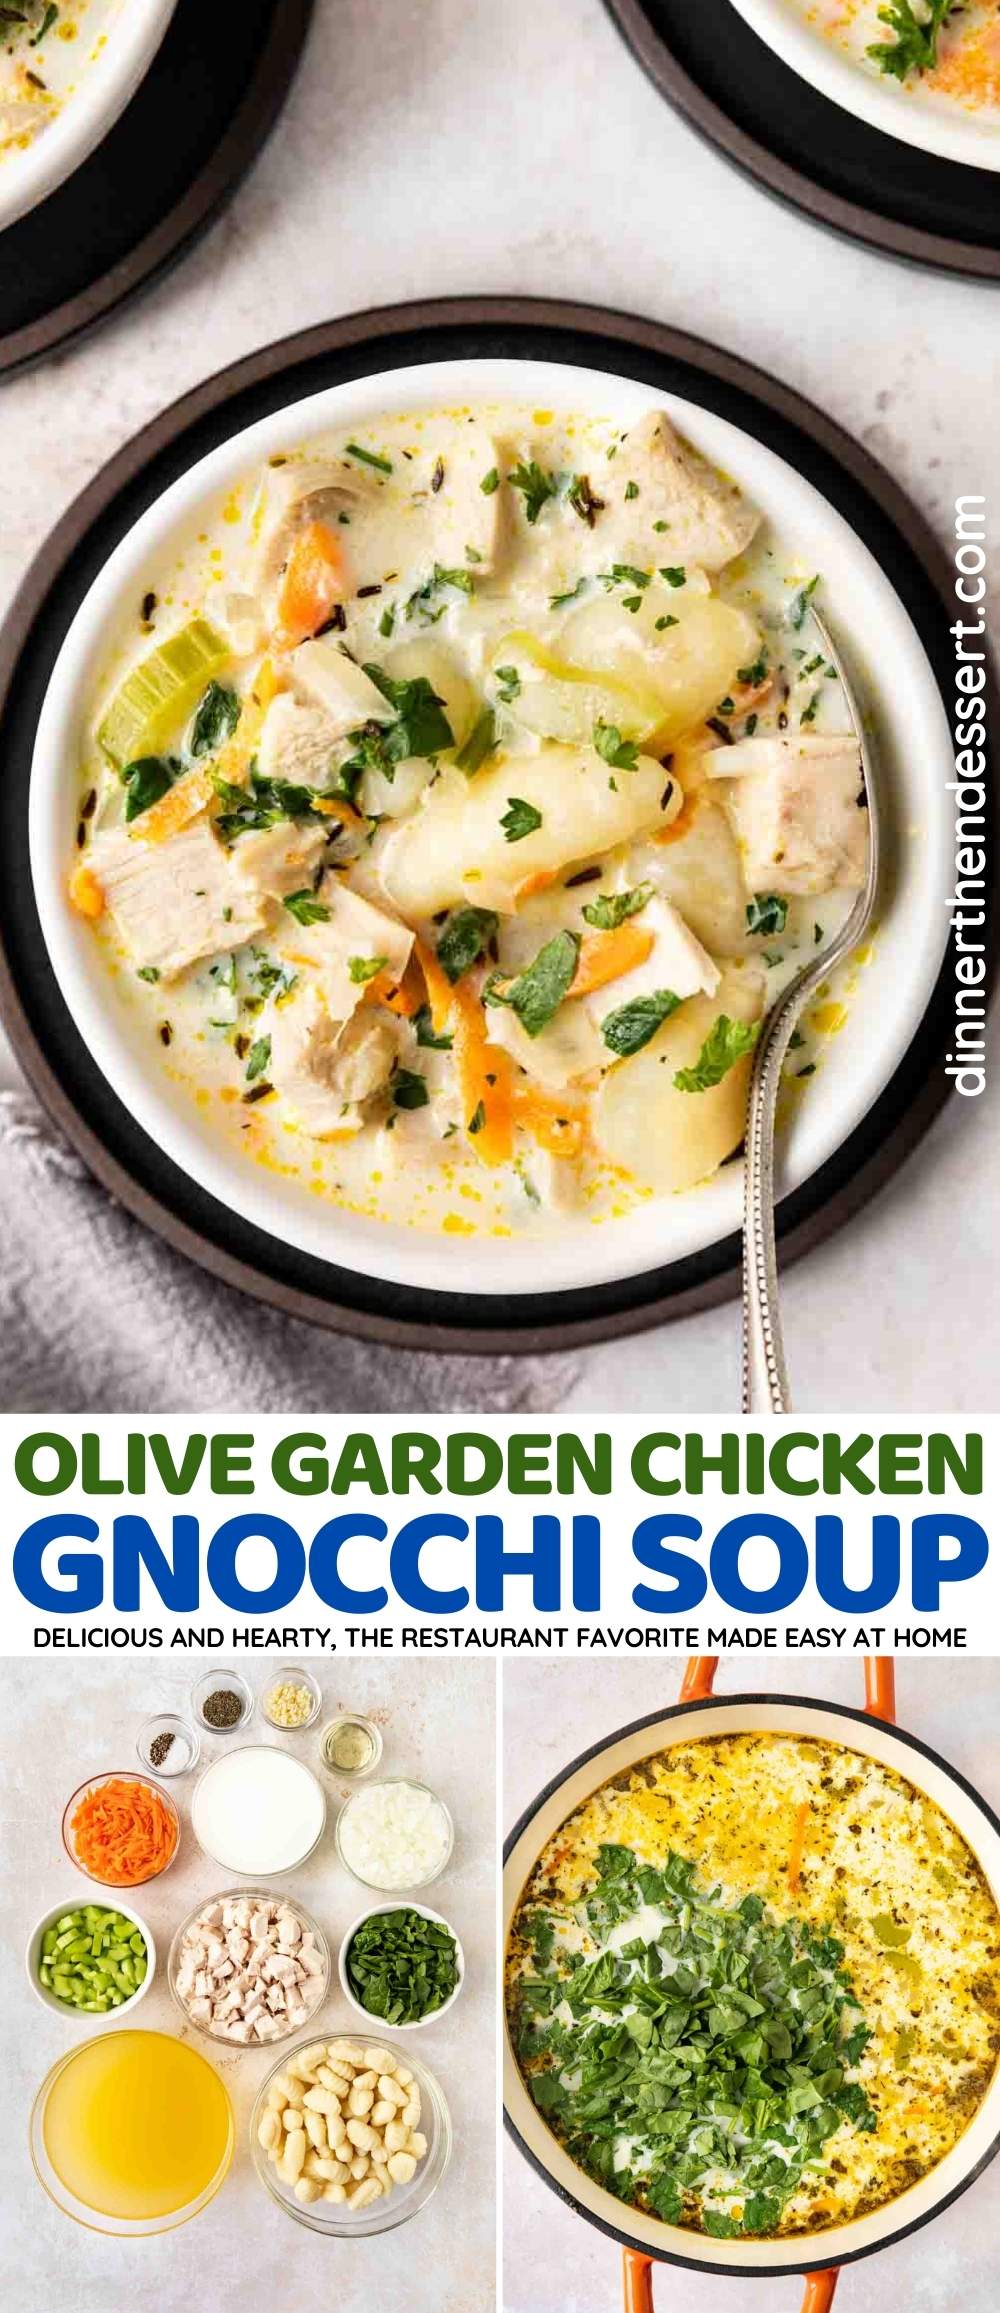 Olive Garden Chicken Gnocchi Soup collage